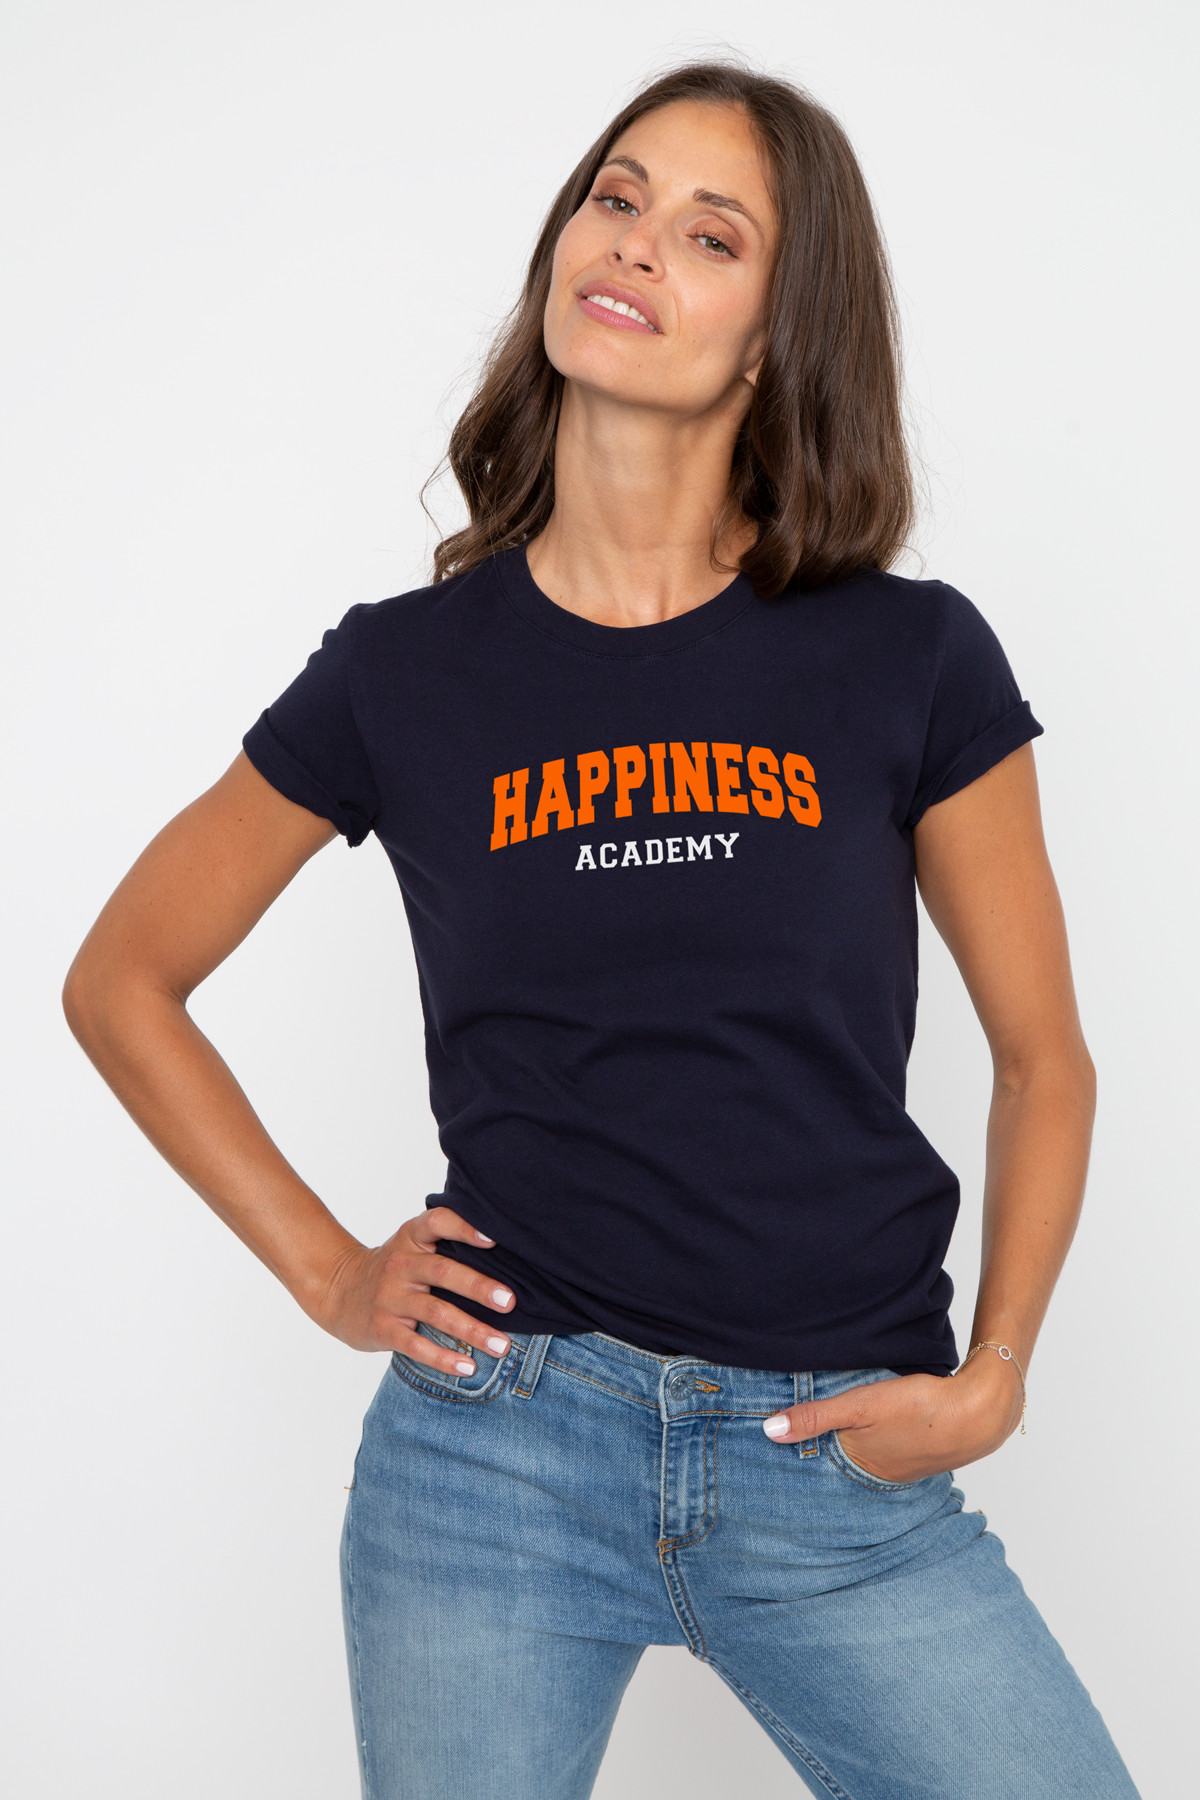 T-shirt Alex HAPPINESS ACADEMY (W)